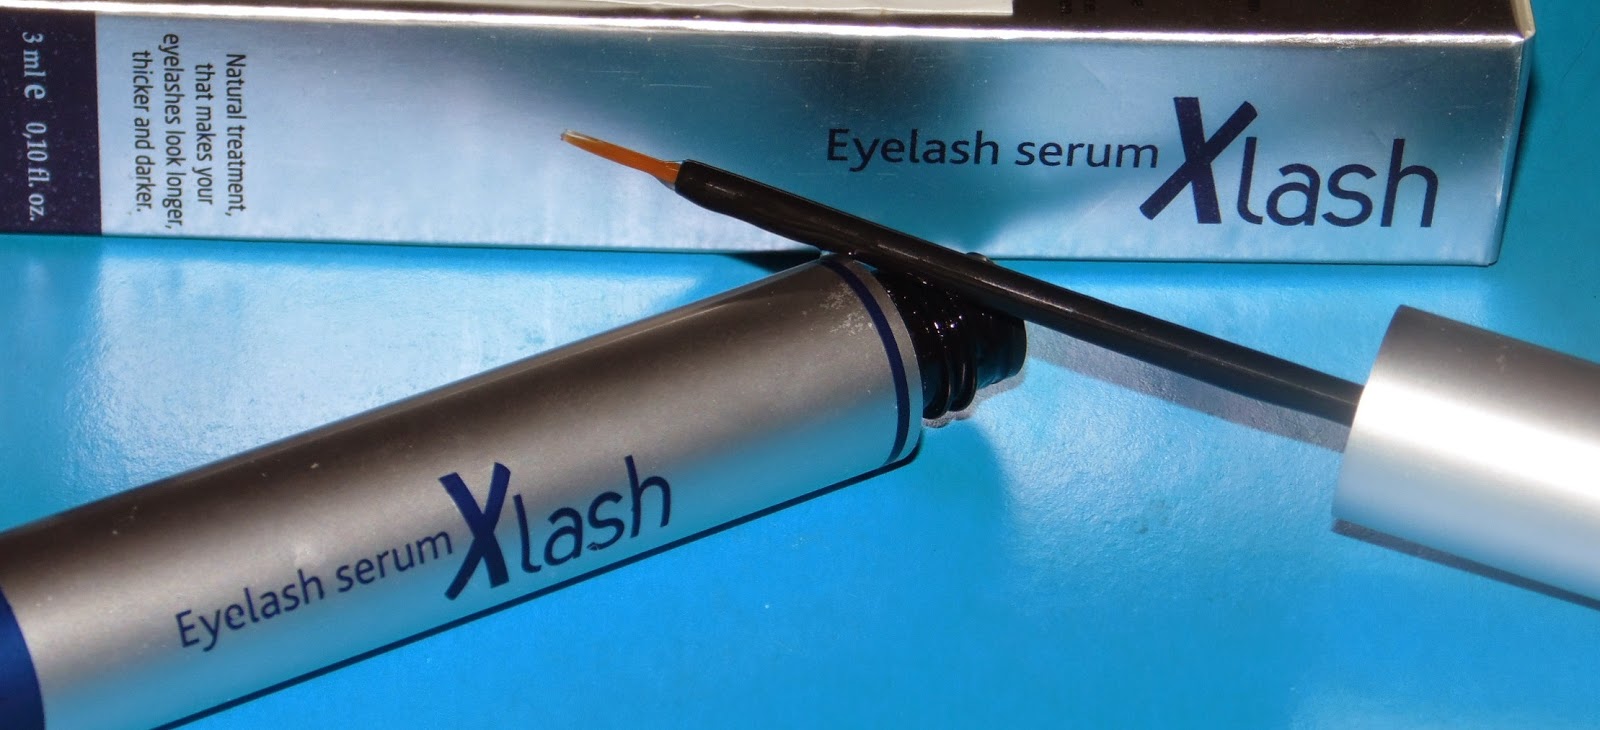 Eyelash serum xlash